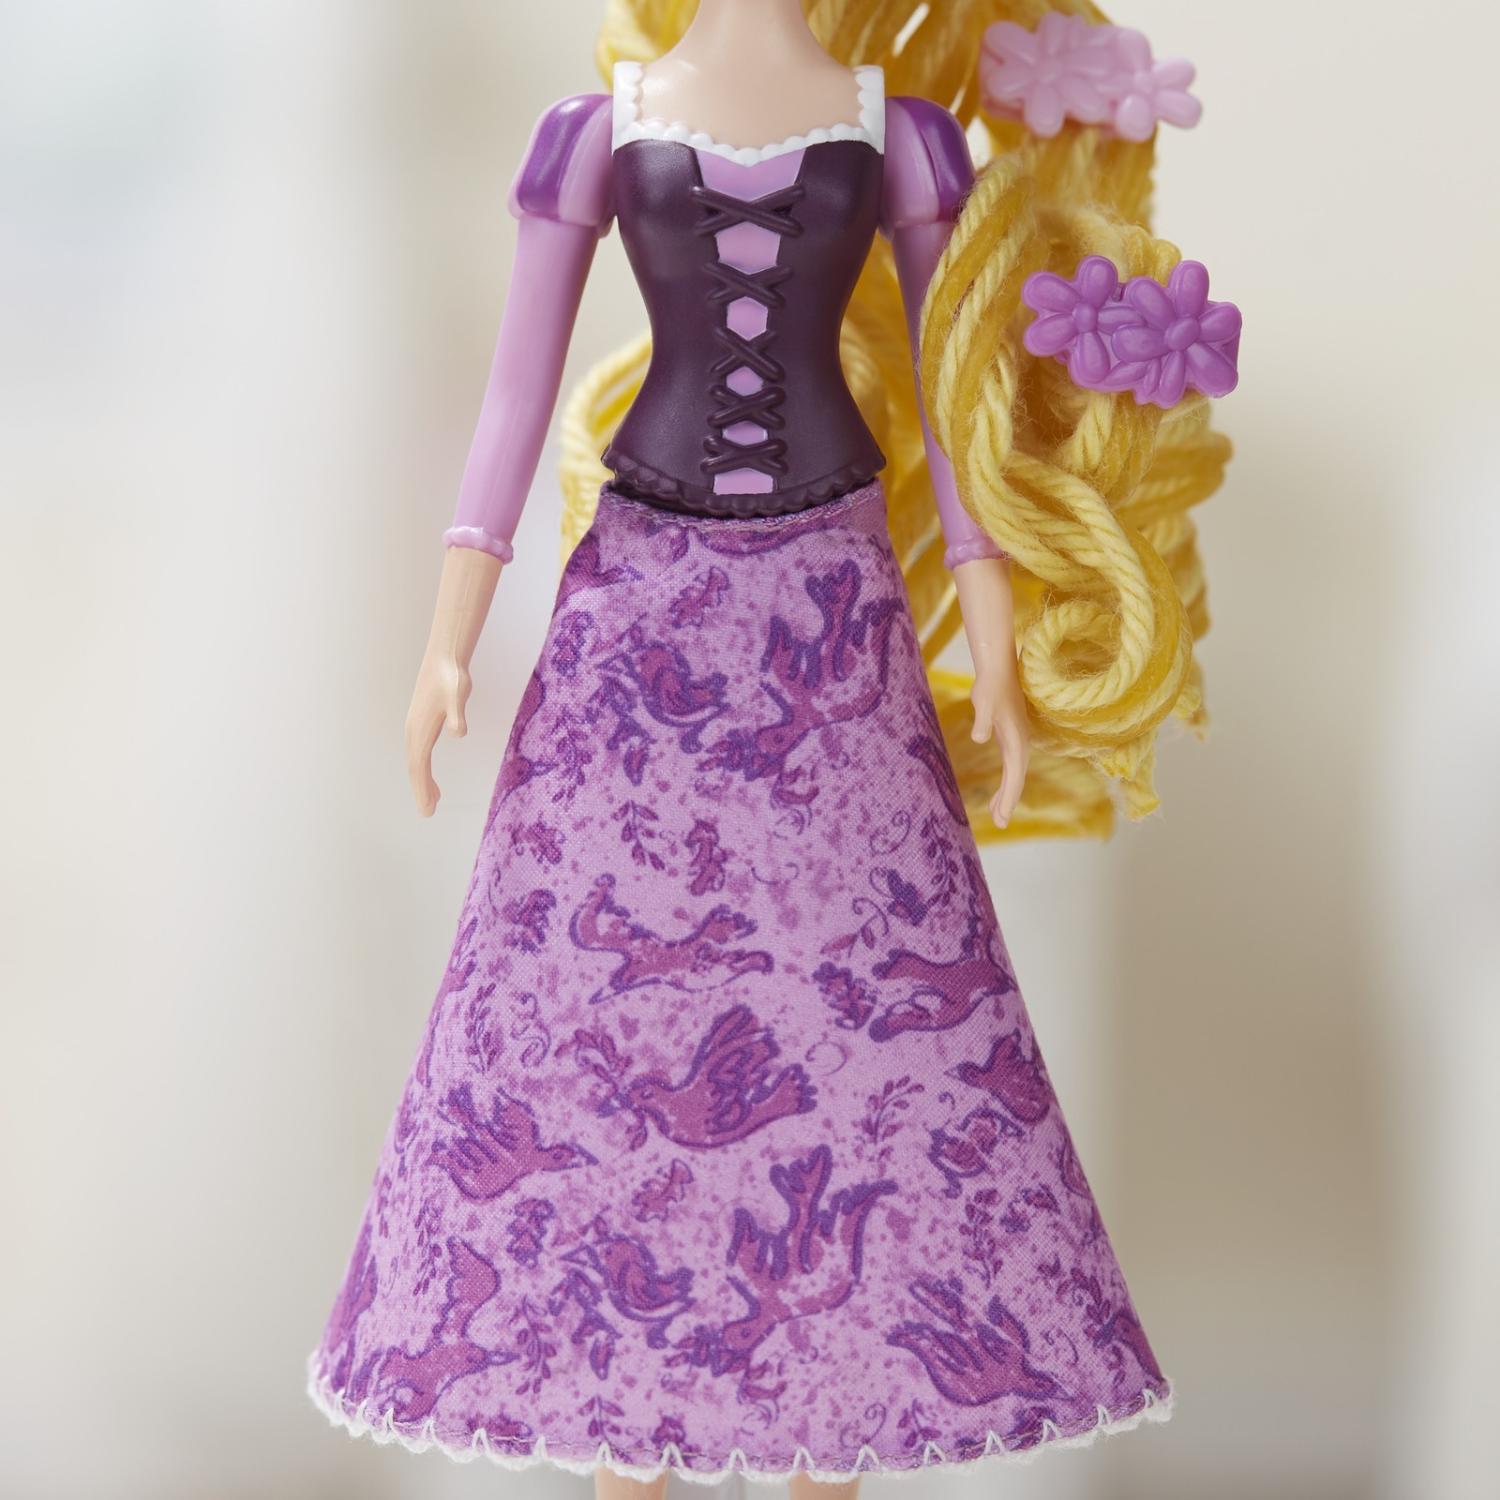 Кукла и набор для укладки – Рапунцель. Disney Princess  